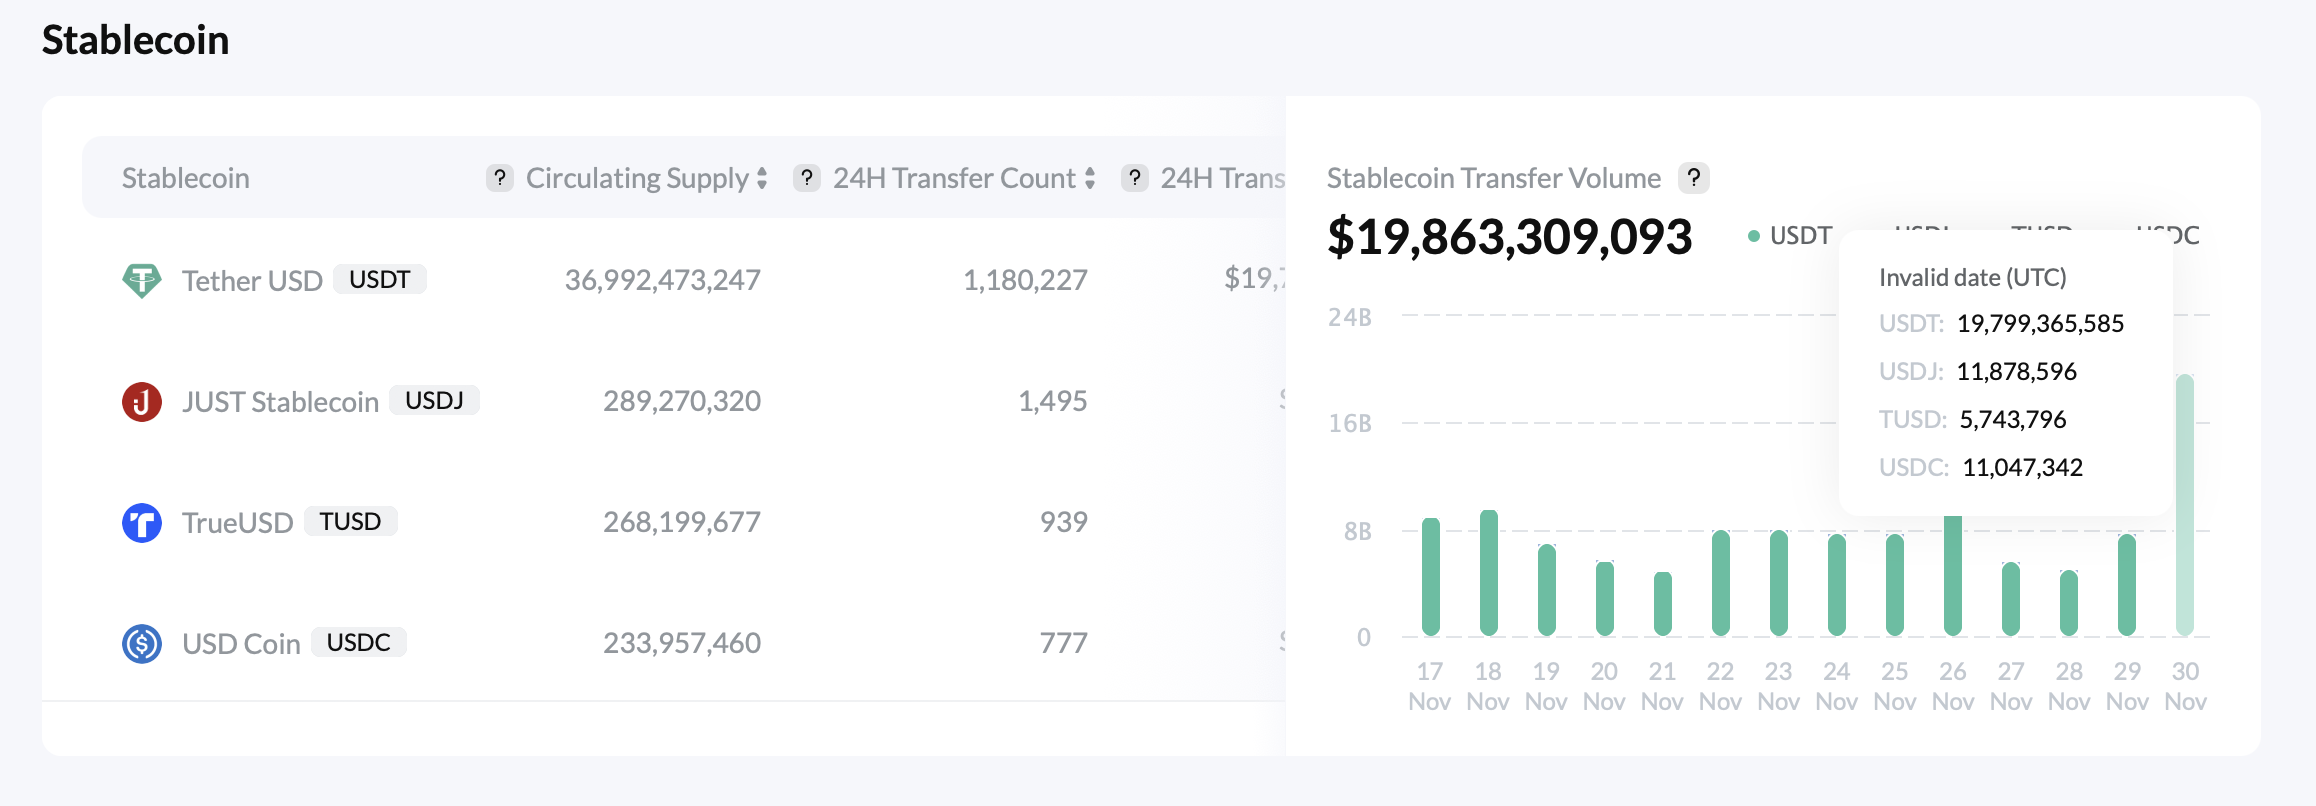 Todo sobre la hazaña 'impresionante' de Tron, ve más de $ 19 mil millones en volumen de transferencia de monedas estables